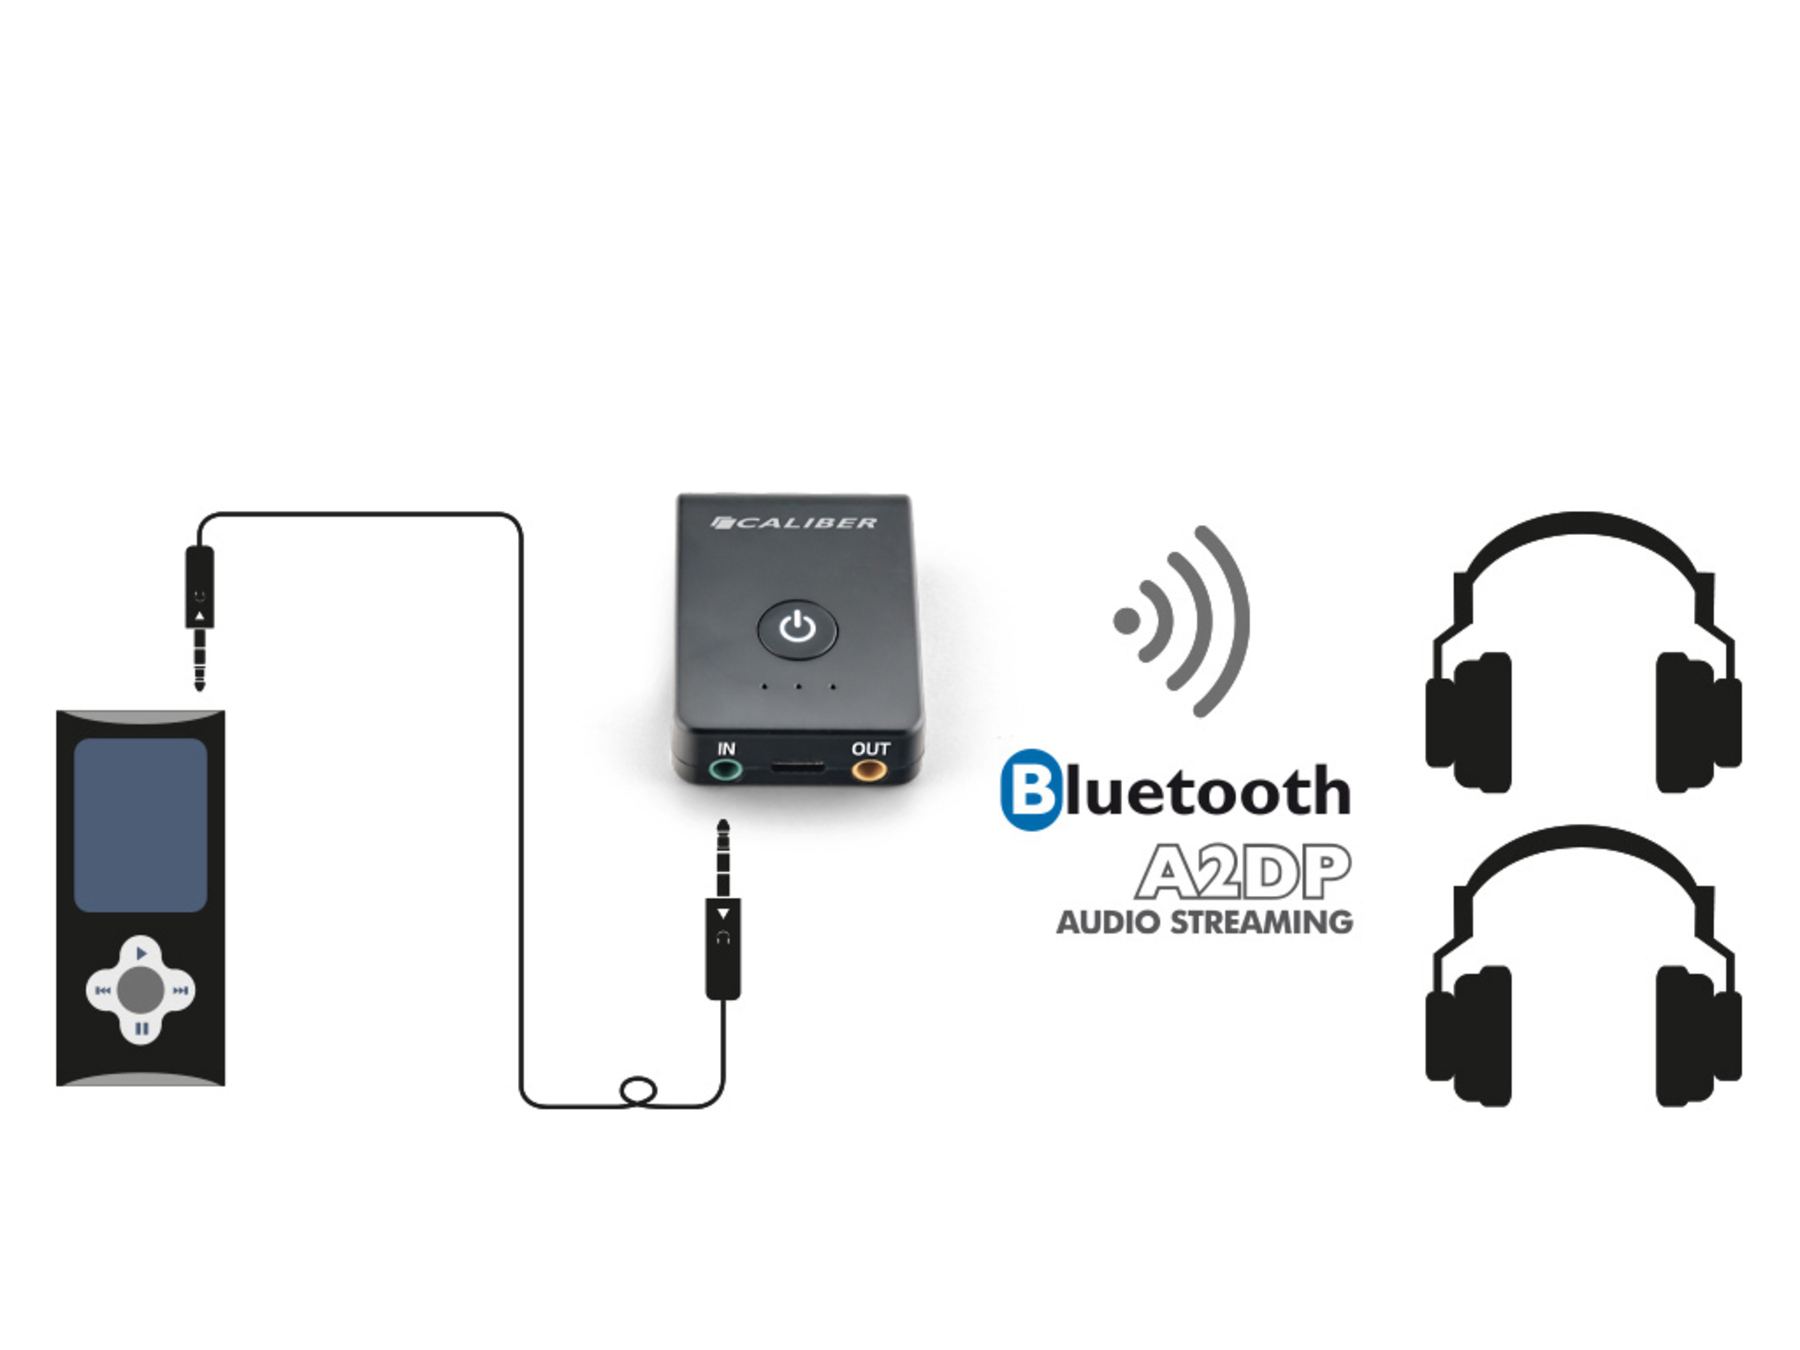 CALIBER PMR206BT Bluetooth -Empfänger und Sender